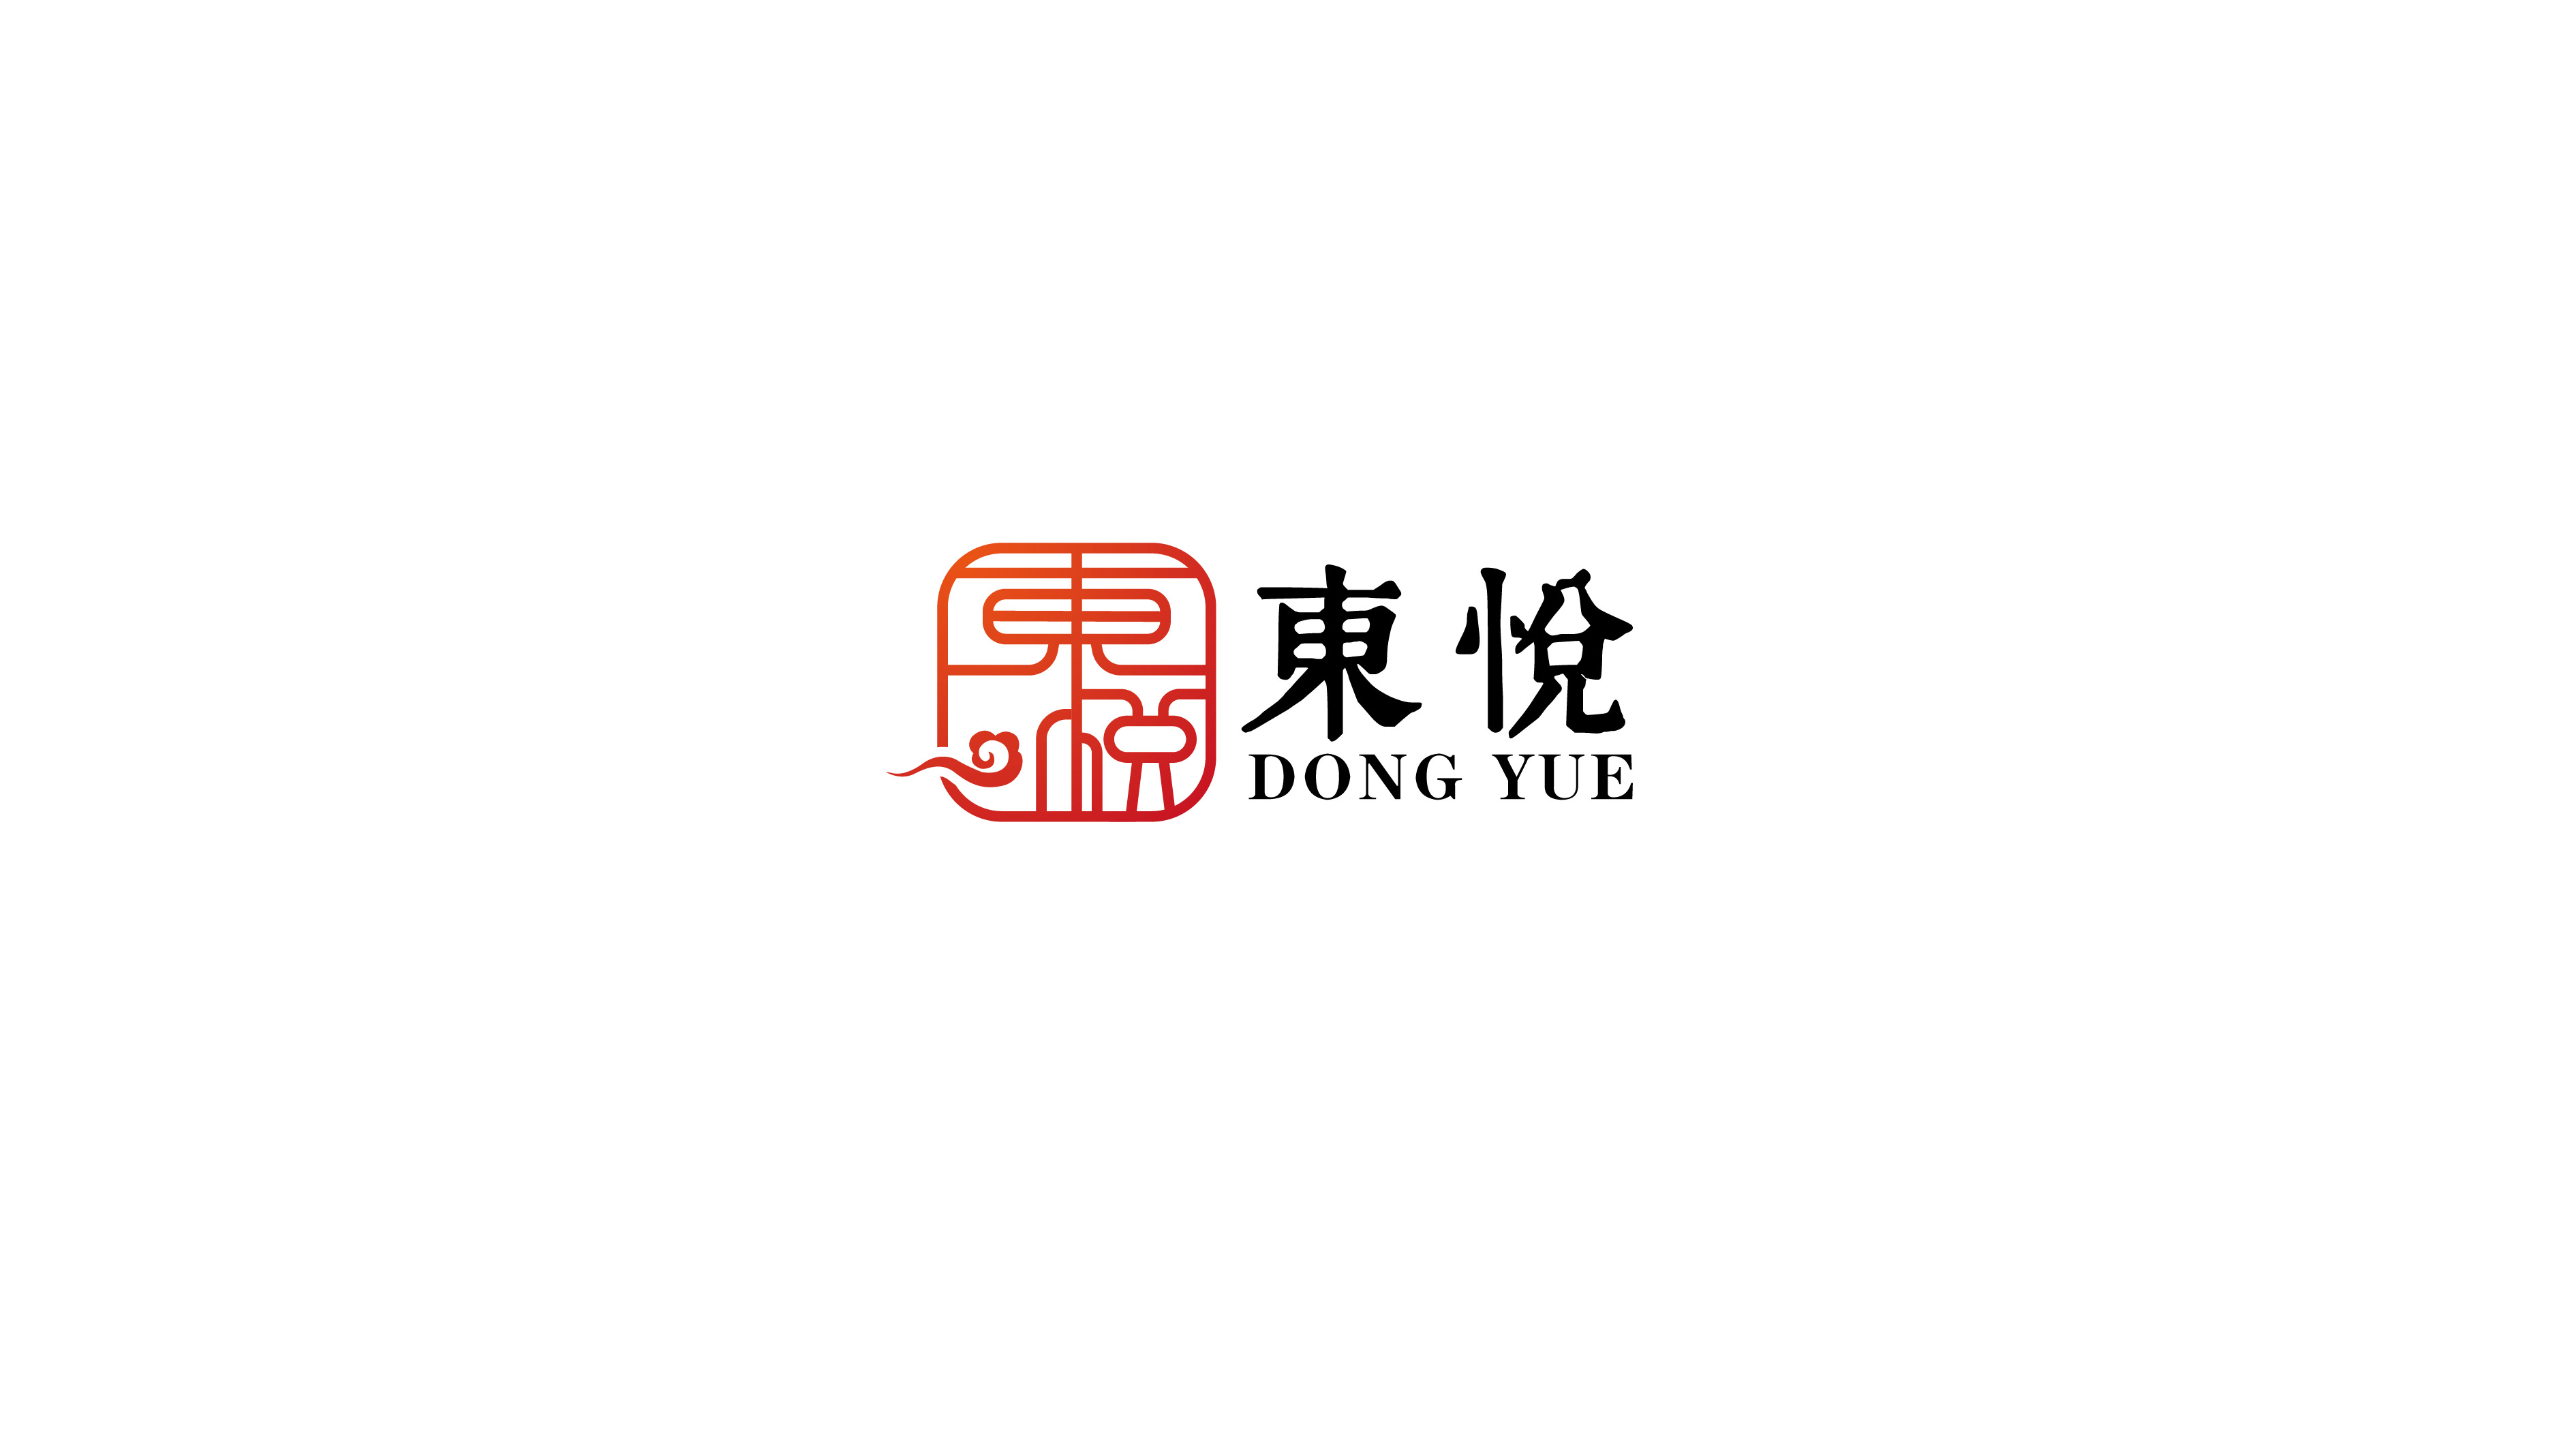 中高端烟酒商店logo设计